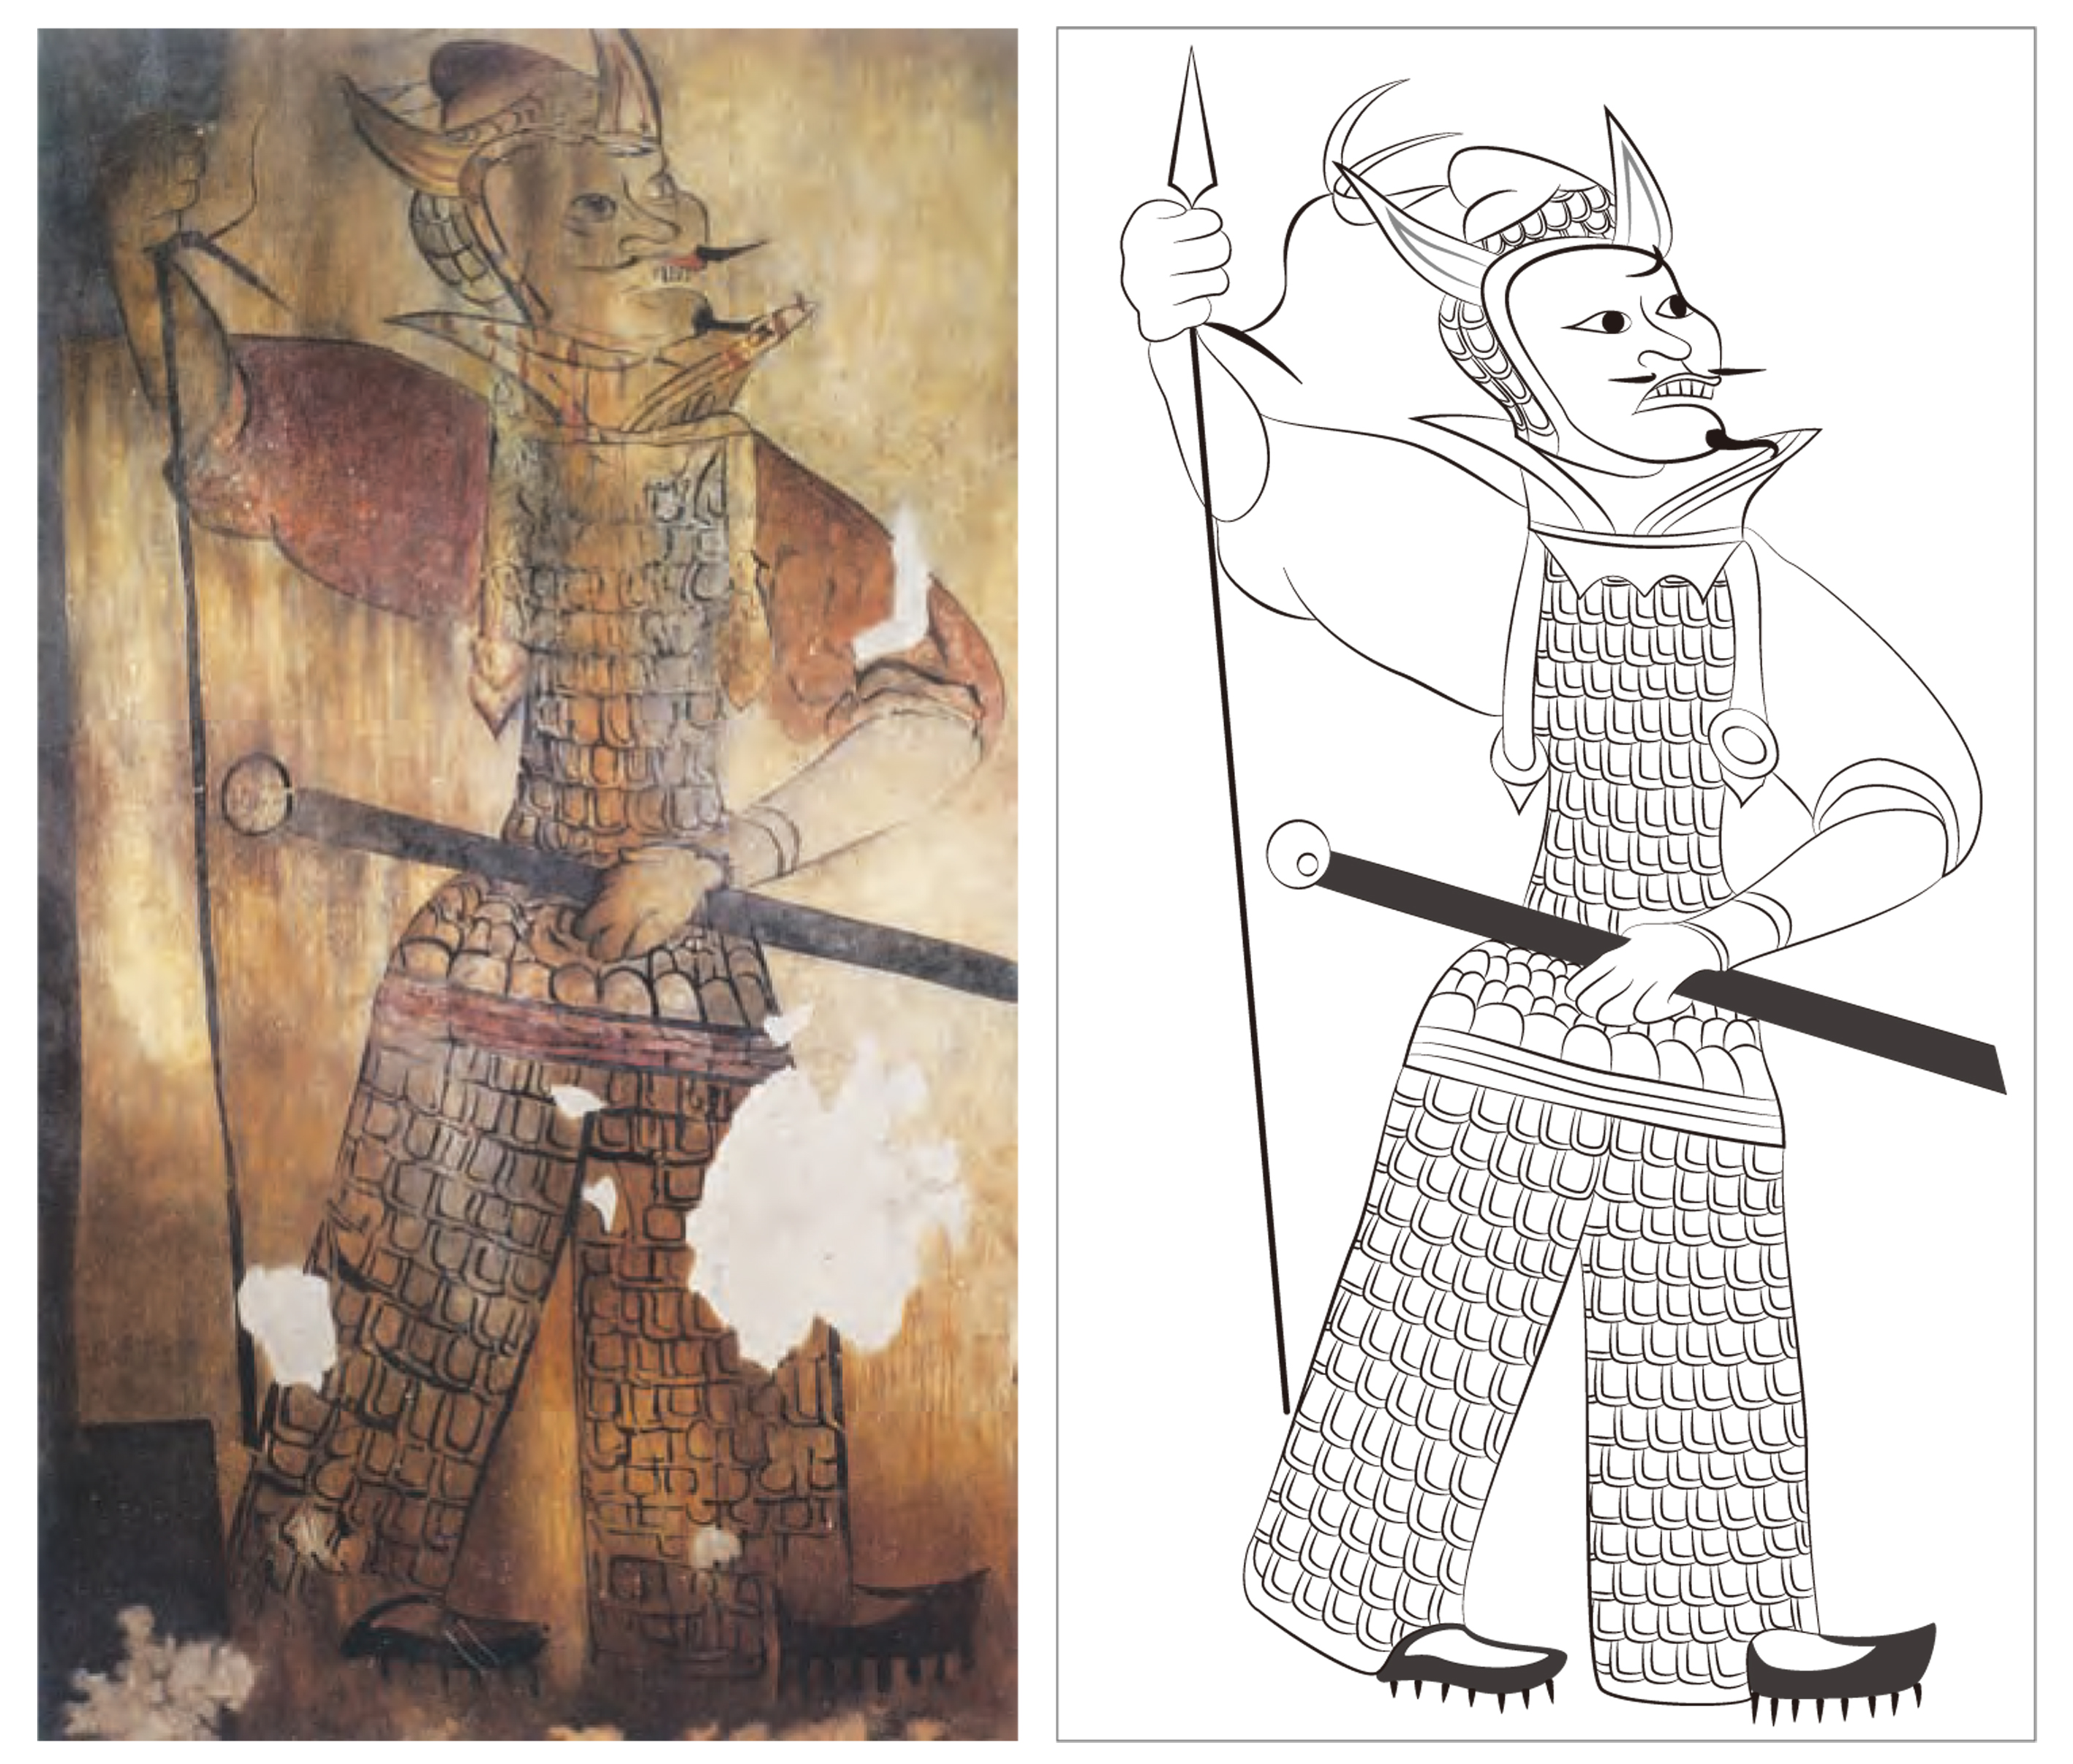 1500년 전 고구려인의 세계관을 그려낸 벽화 속 문양의 삽화, 누구나 쉽게 다운로드